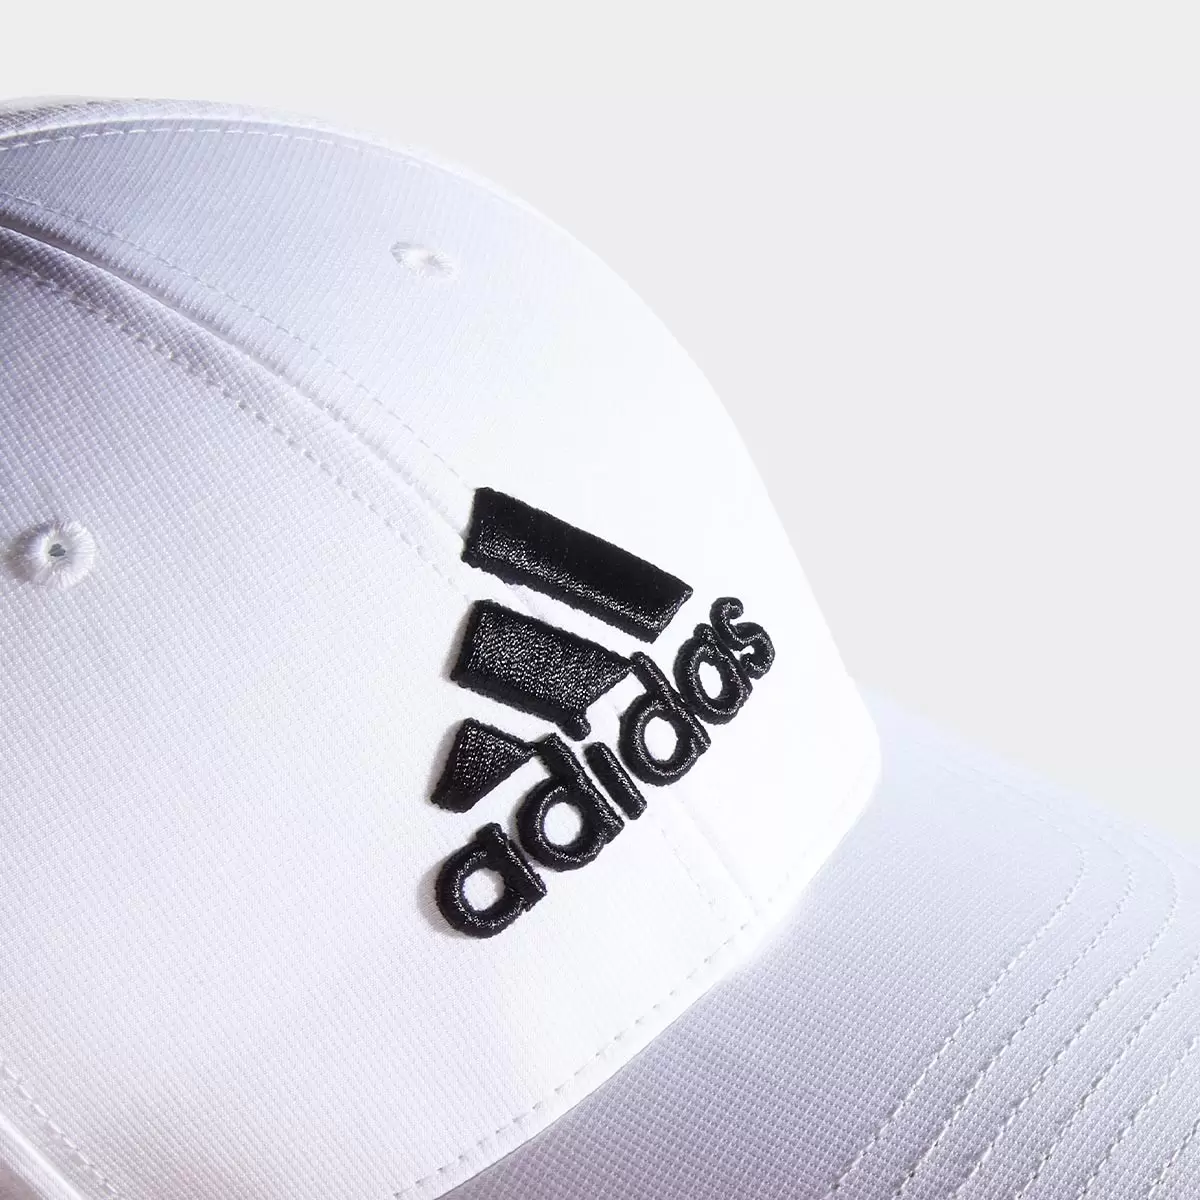 Adidas Golf 休閒帽 白